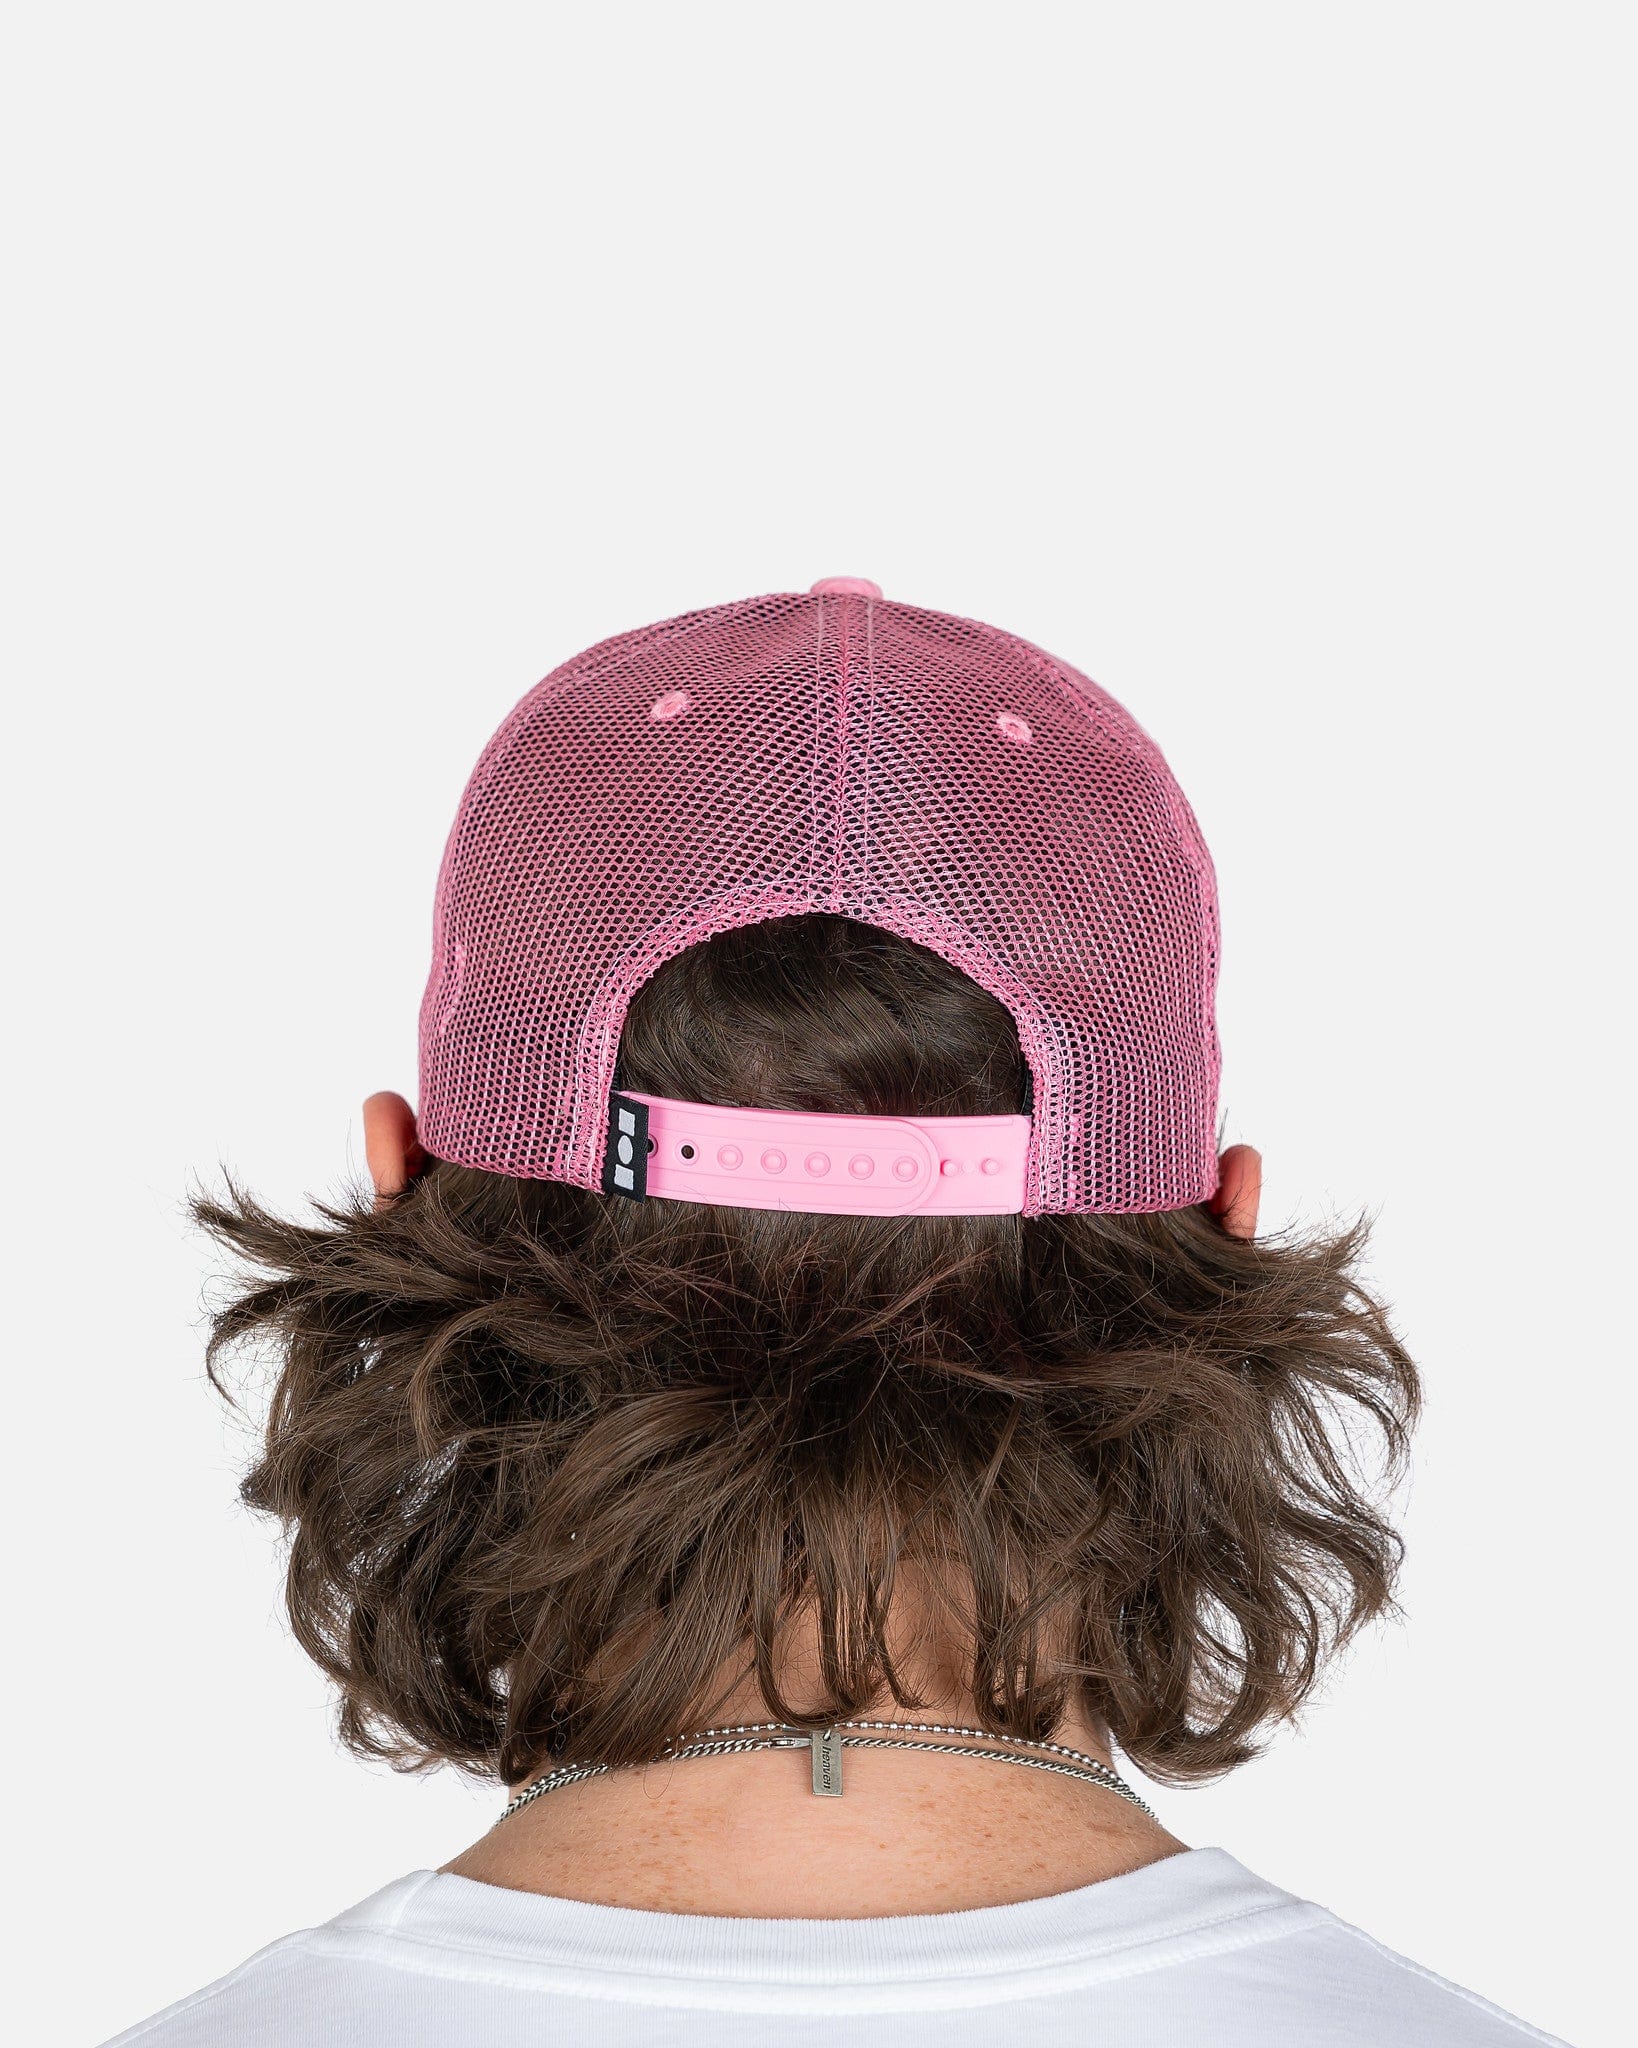 NAHMIAS Men's Hats Summerland Corduroy Trucker Hat in Pink